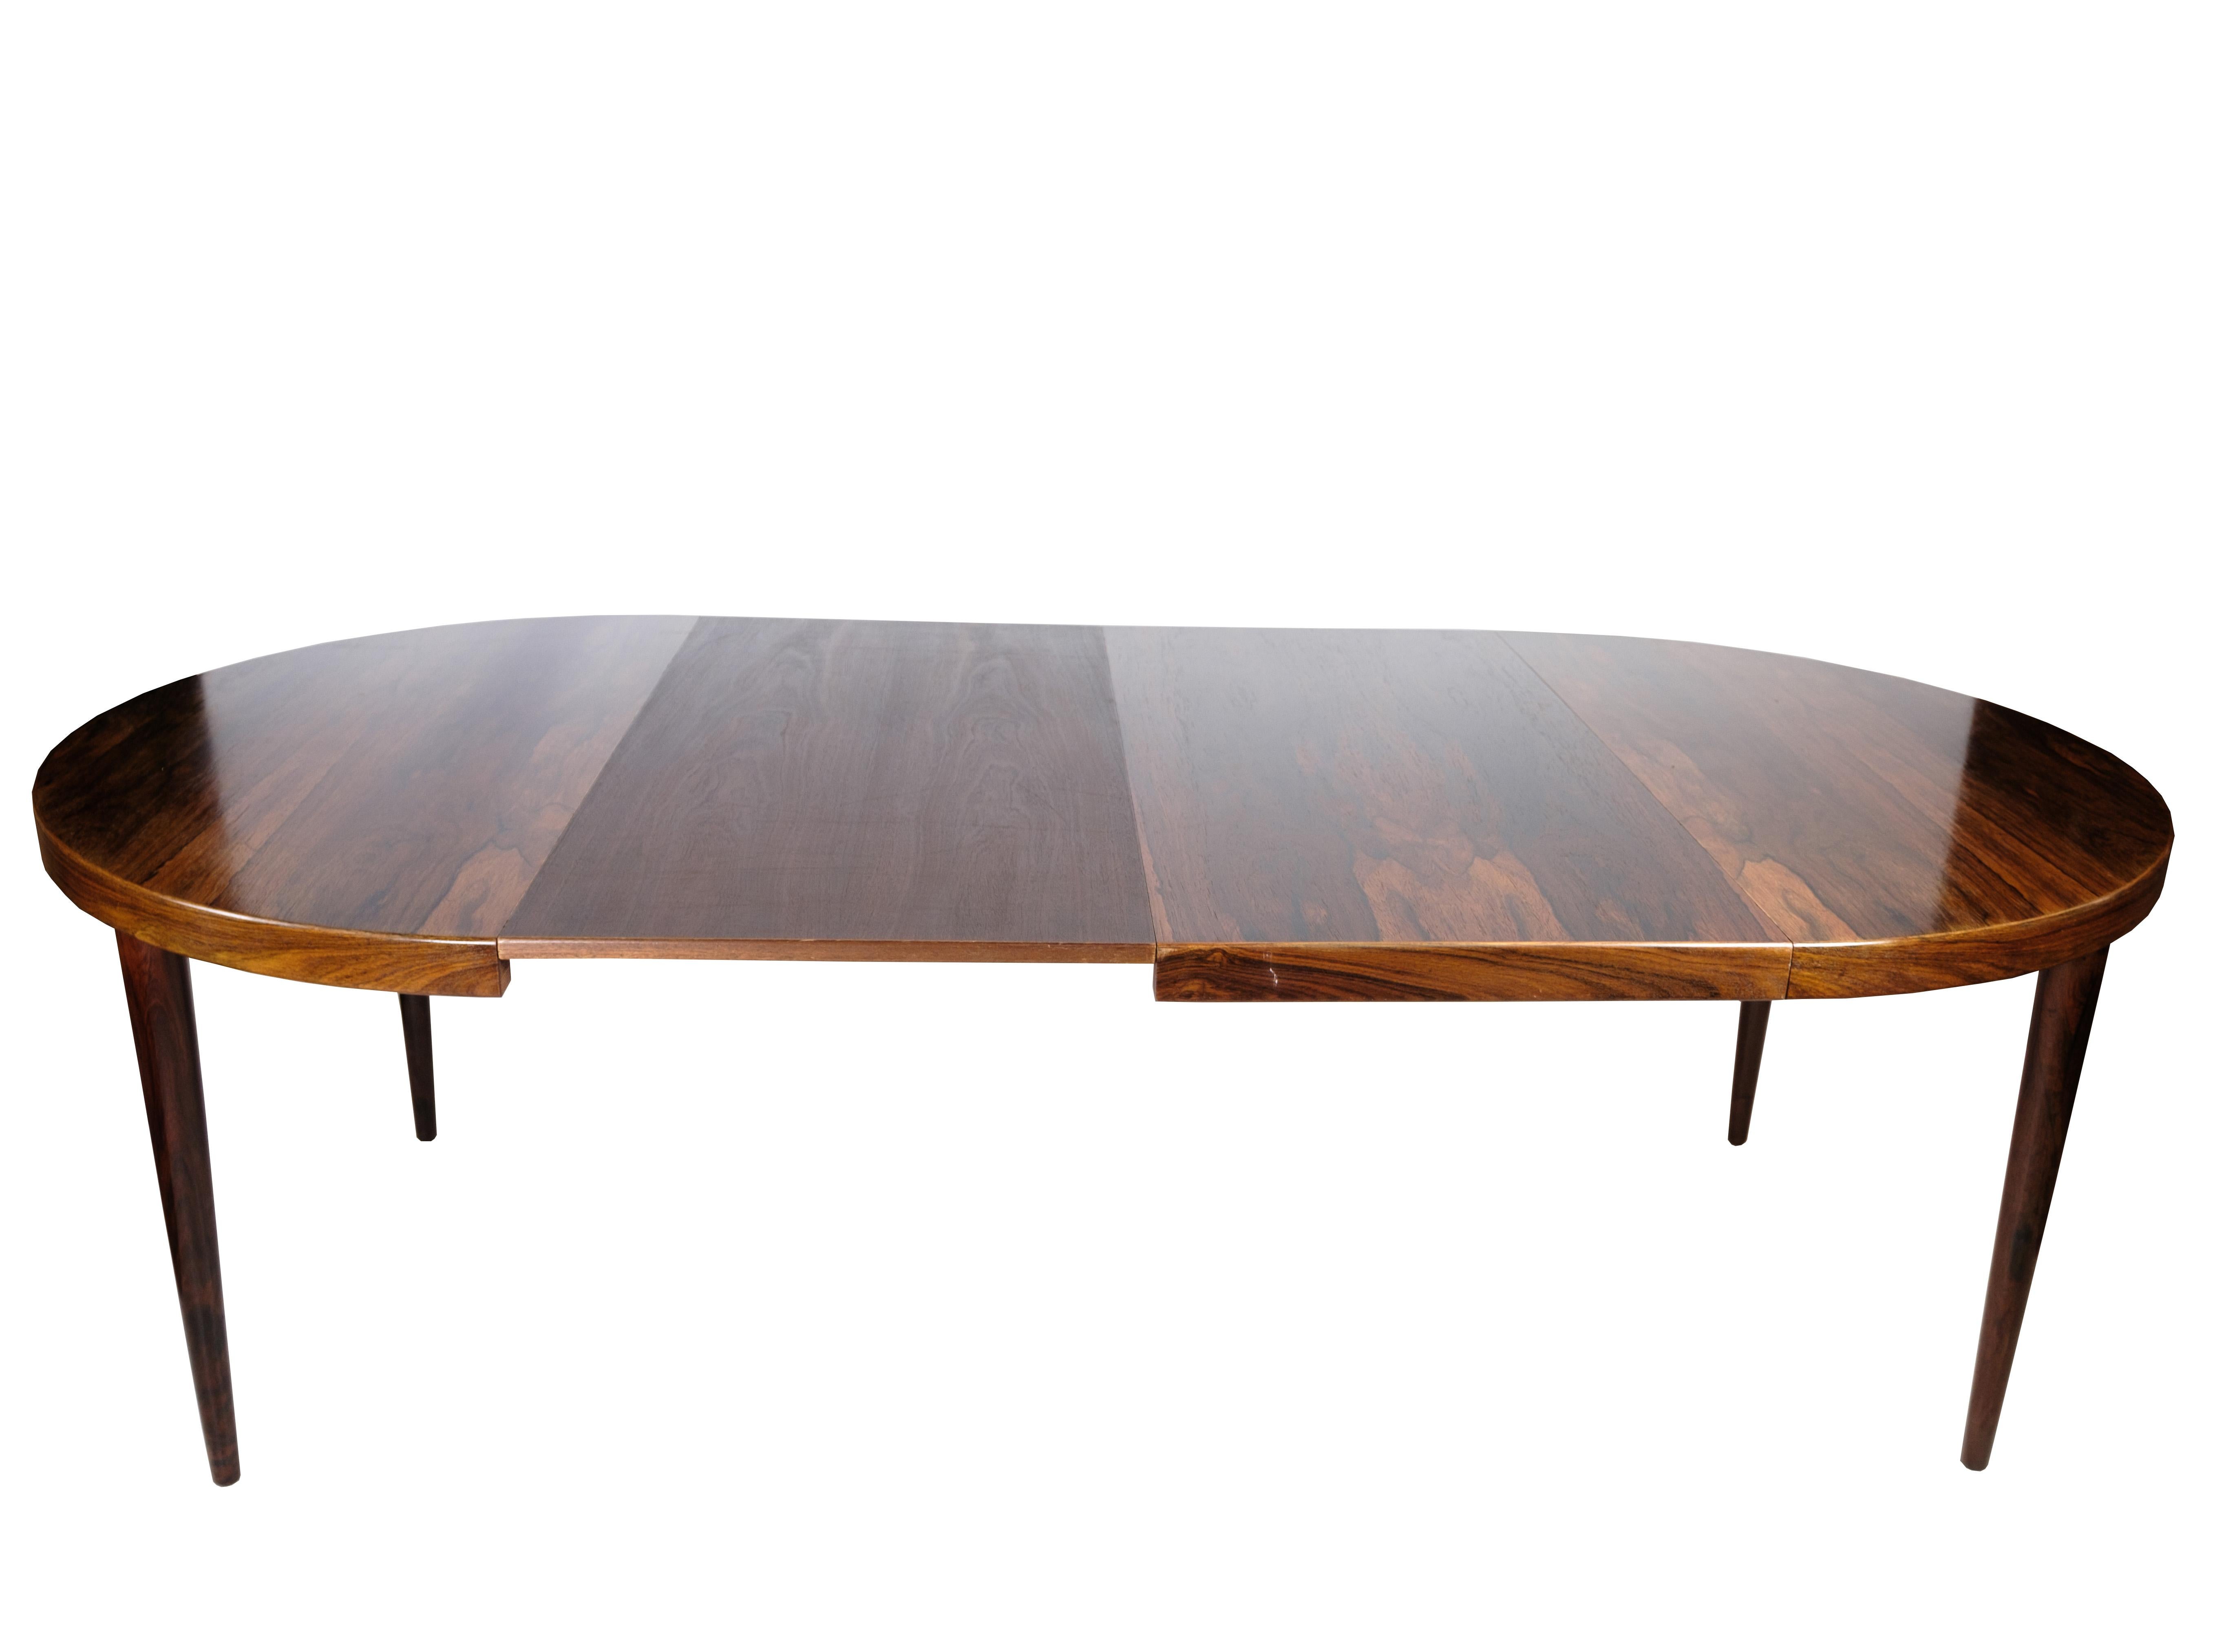 Une table de salle à manger ronde en bois de rose fabriquée par Design/One Junior, qui témoigne de l'excellence du design danois des années 1960. Cette pièce élégante est dotée de pieds facilement amovibles et d'un plateau de table magnifiquement